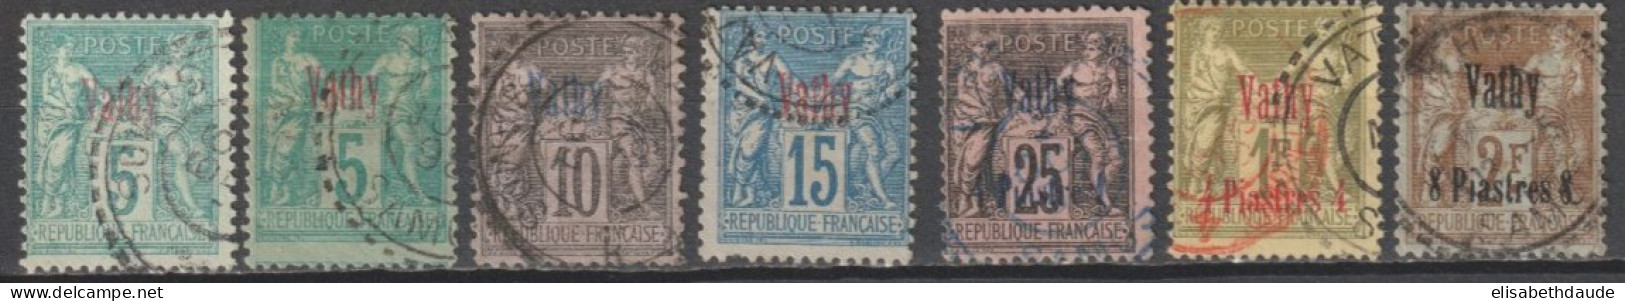 VATHY - 1893 - TYPE SAGE - YVERT N°1+1a+5/7+9/10 OBLITERES (10 SIGNE ROUMET) - COTE = 300 EUR - Used Stamps